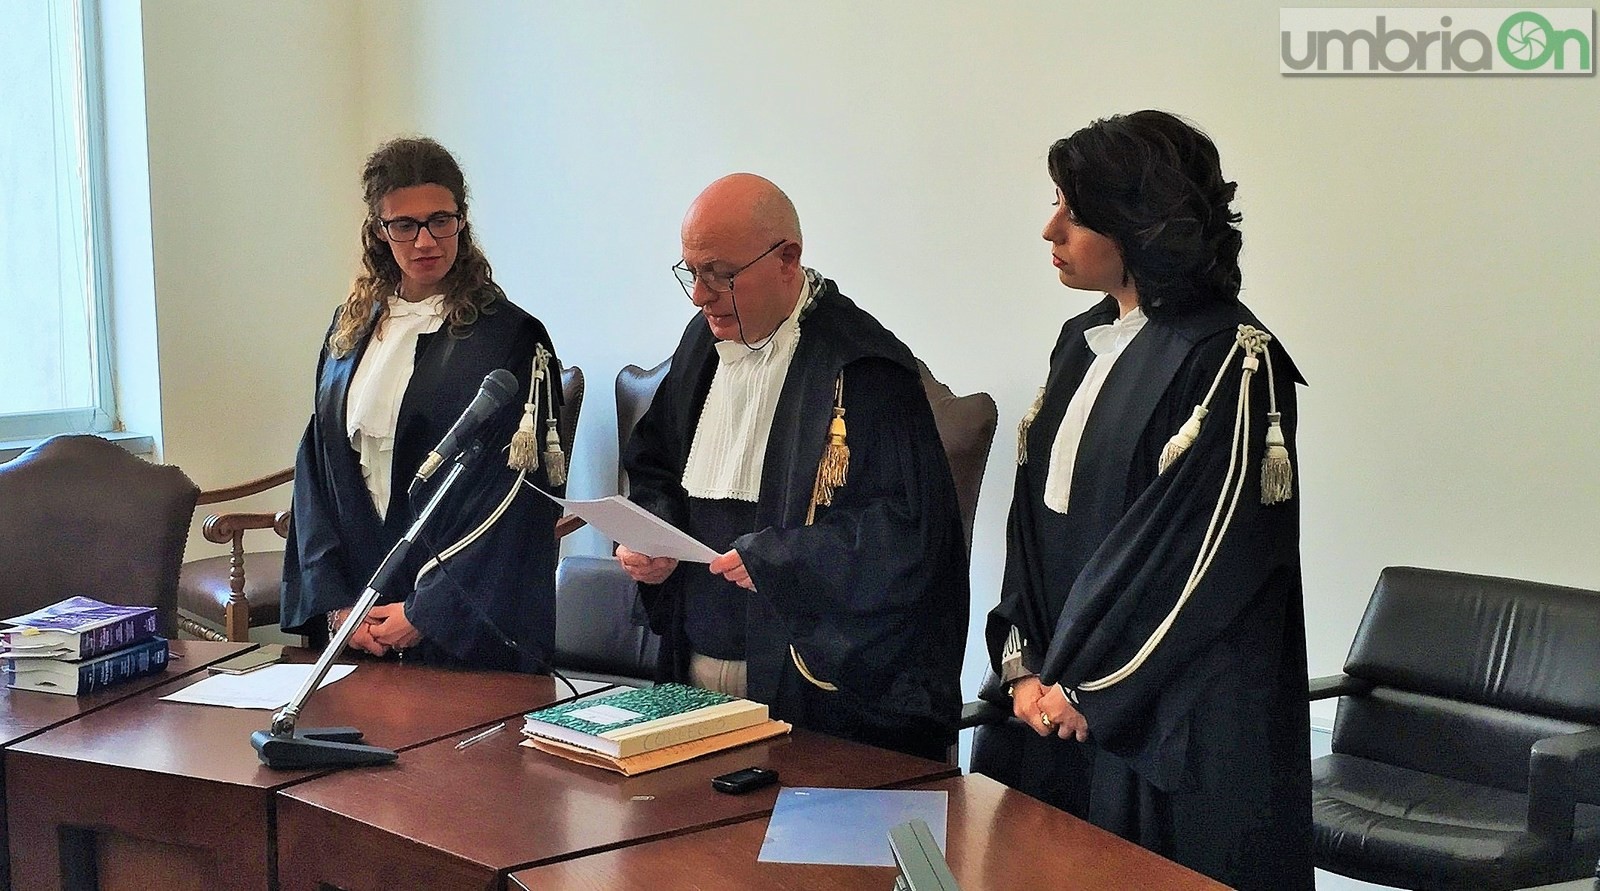 Insediamento nuovo procuratore Terni, Alberto Liguori, giuramento tribunale - 12 aprile 2016 (8)